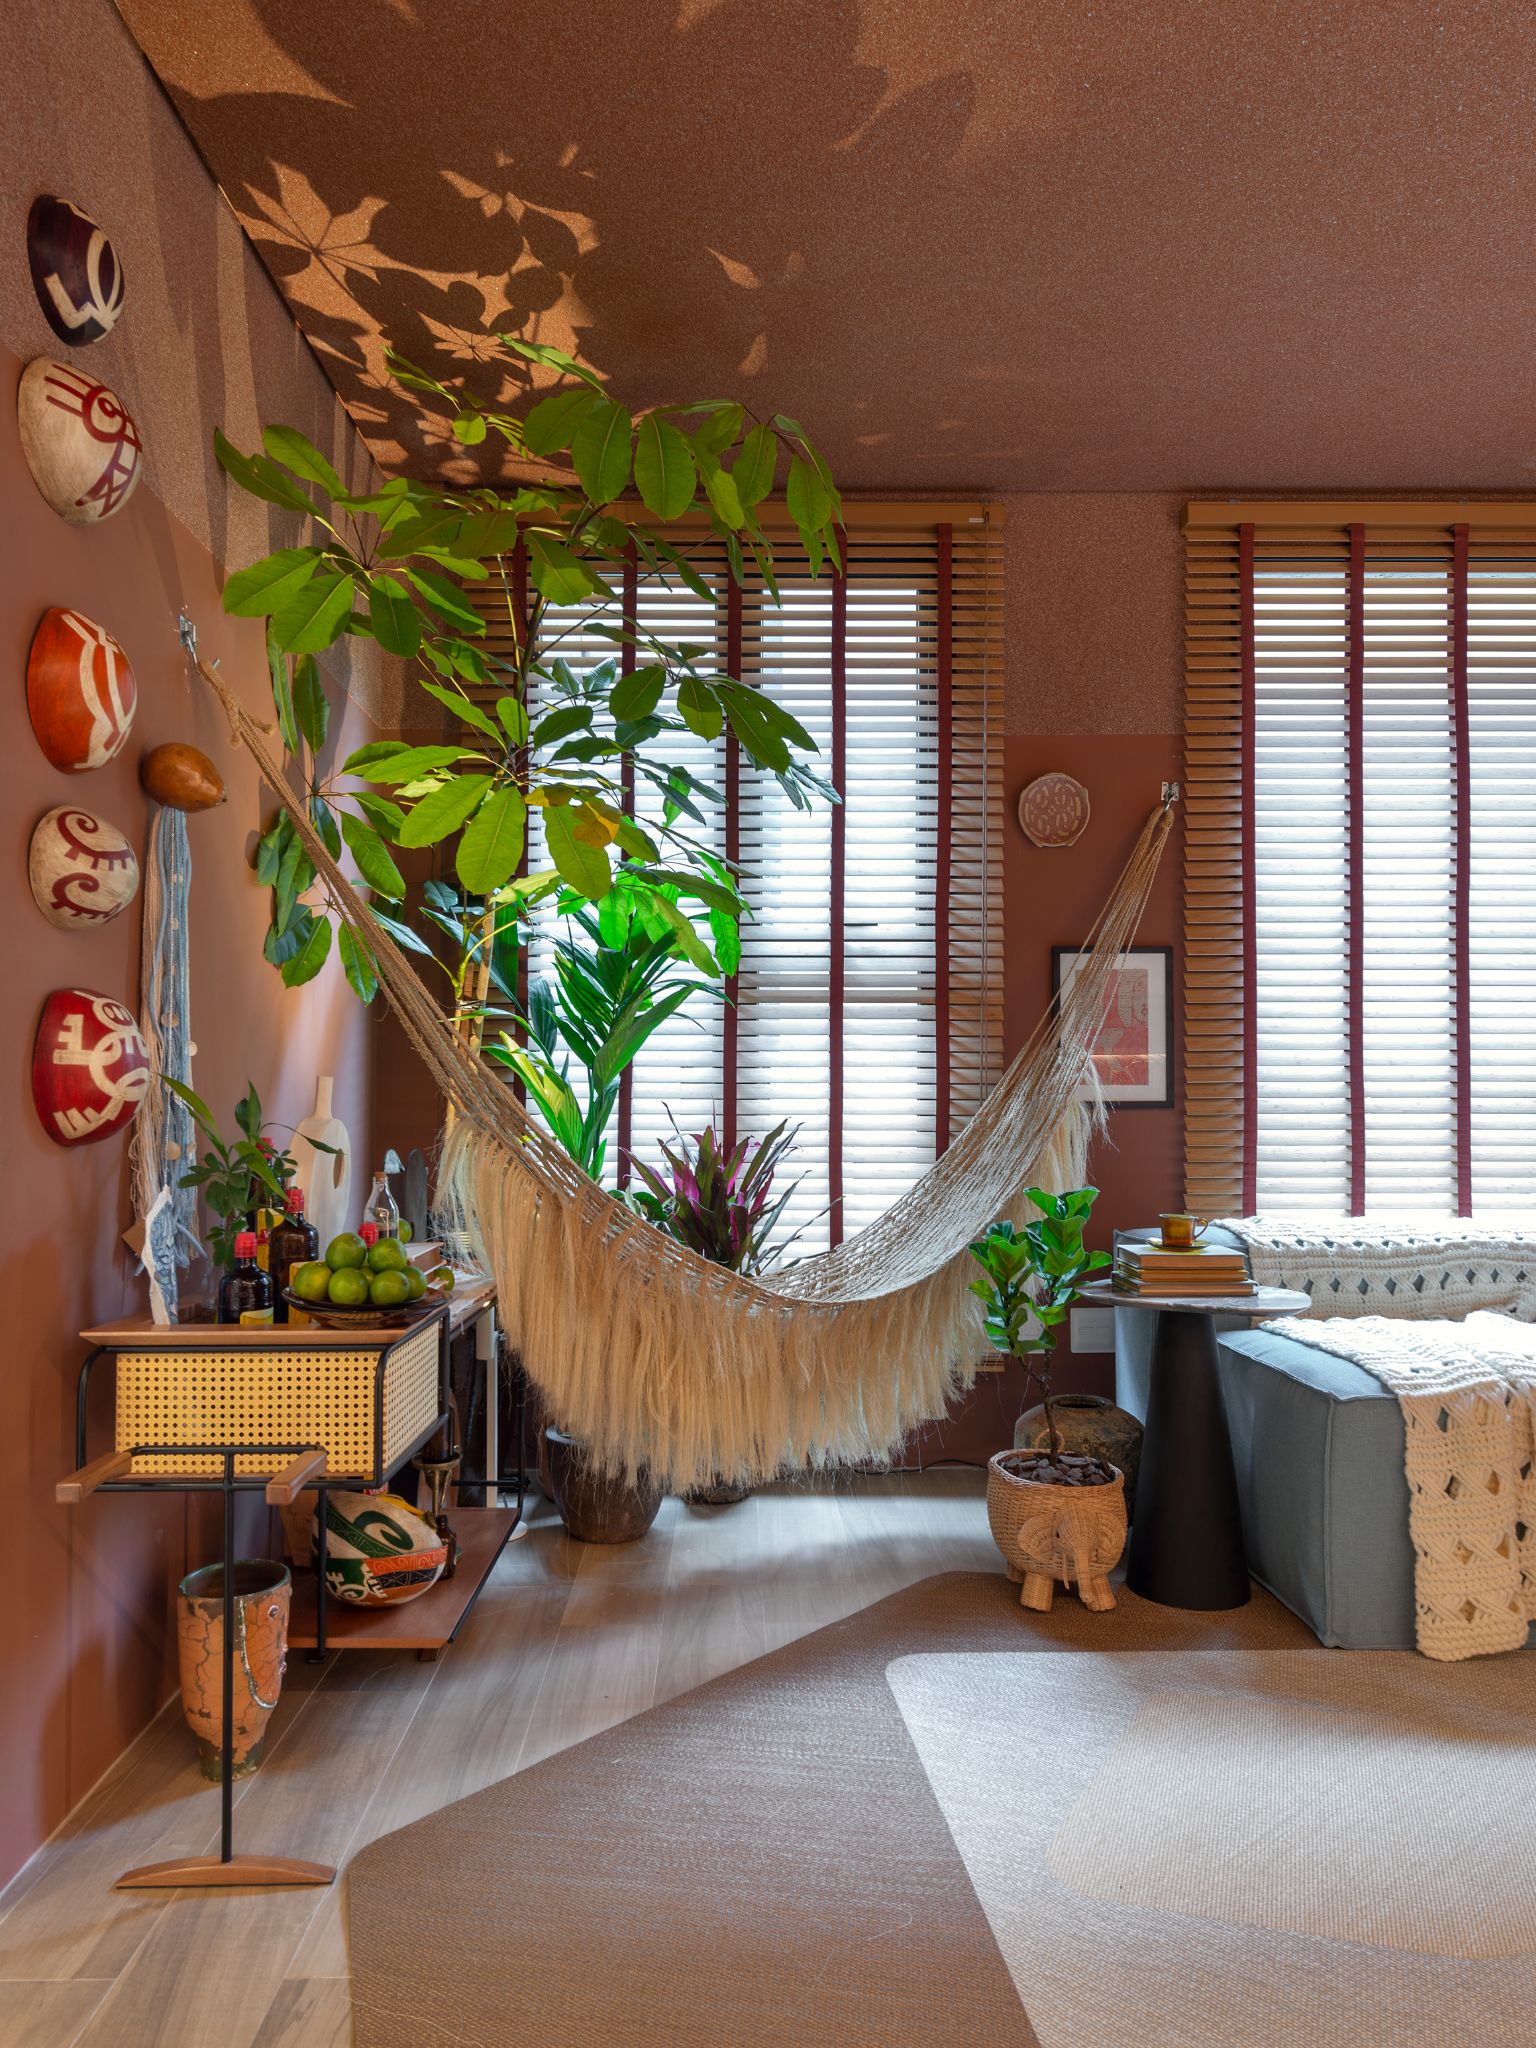 Ambiente com parede roses, piso de madeira, rede cor nude, prateleira suspensa, objetos decorativos na parede e vasos de planta.